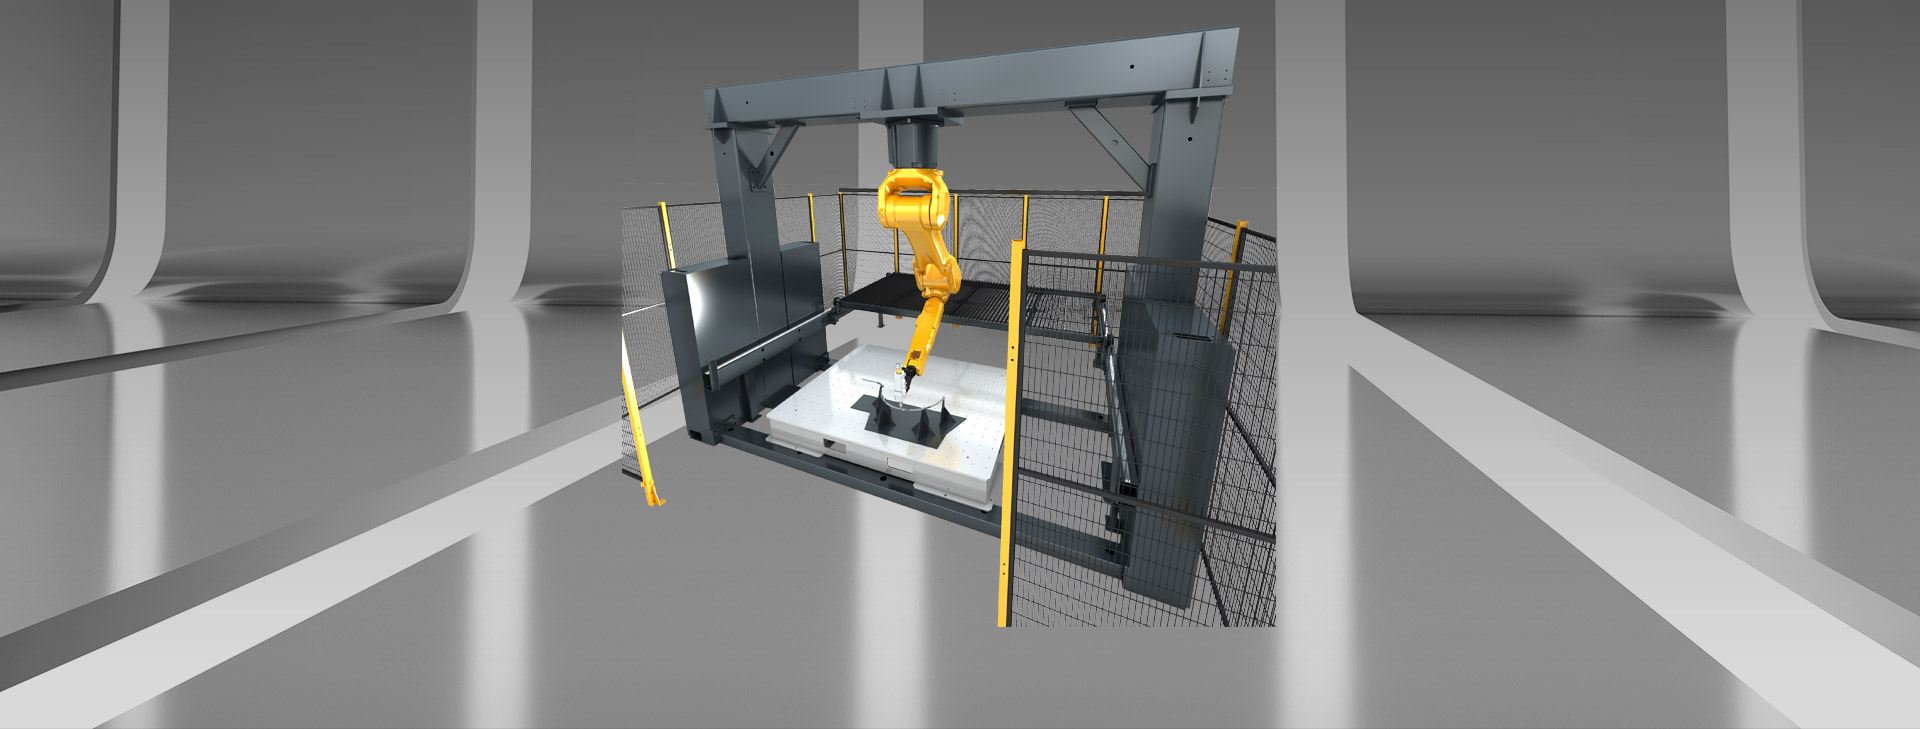 3D робот станок для лазерной резки с козловой структурой